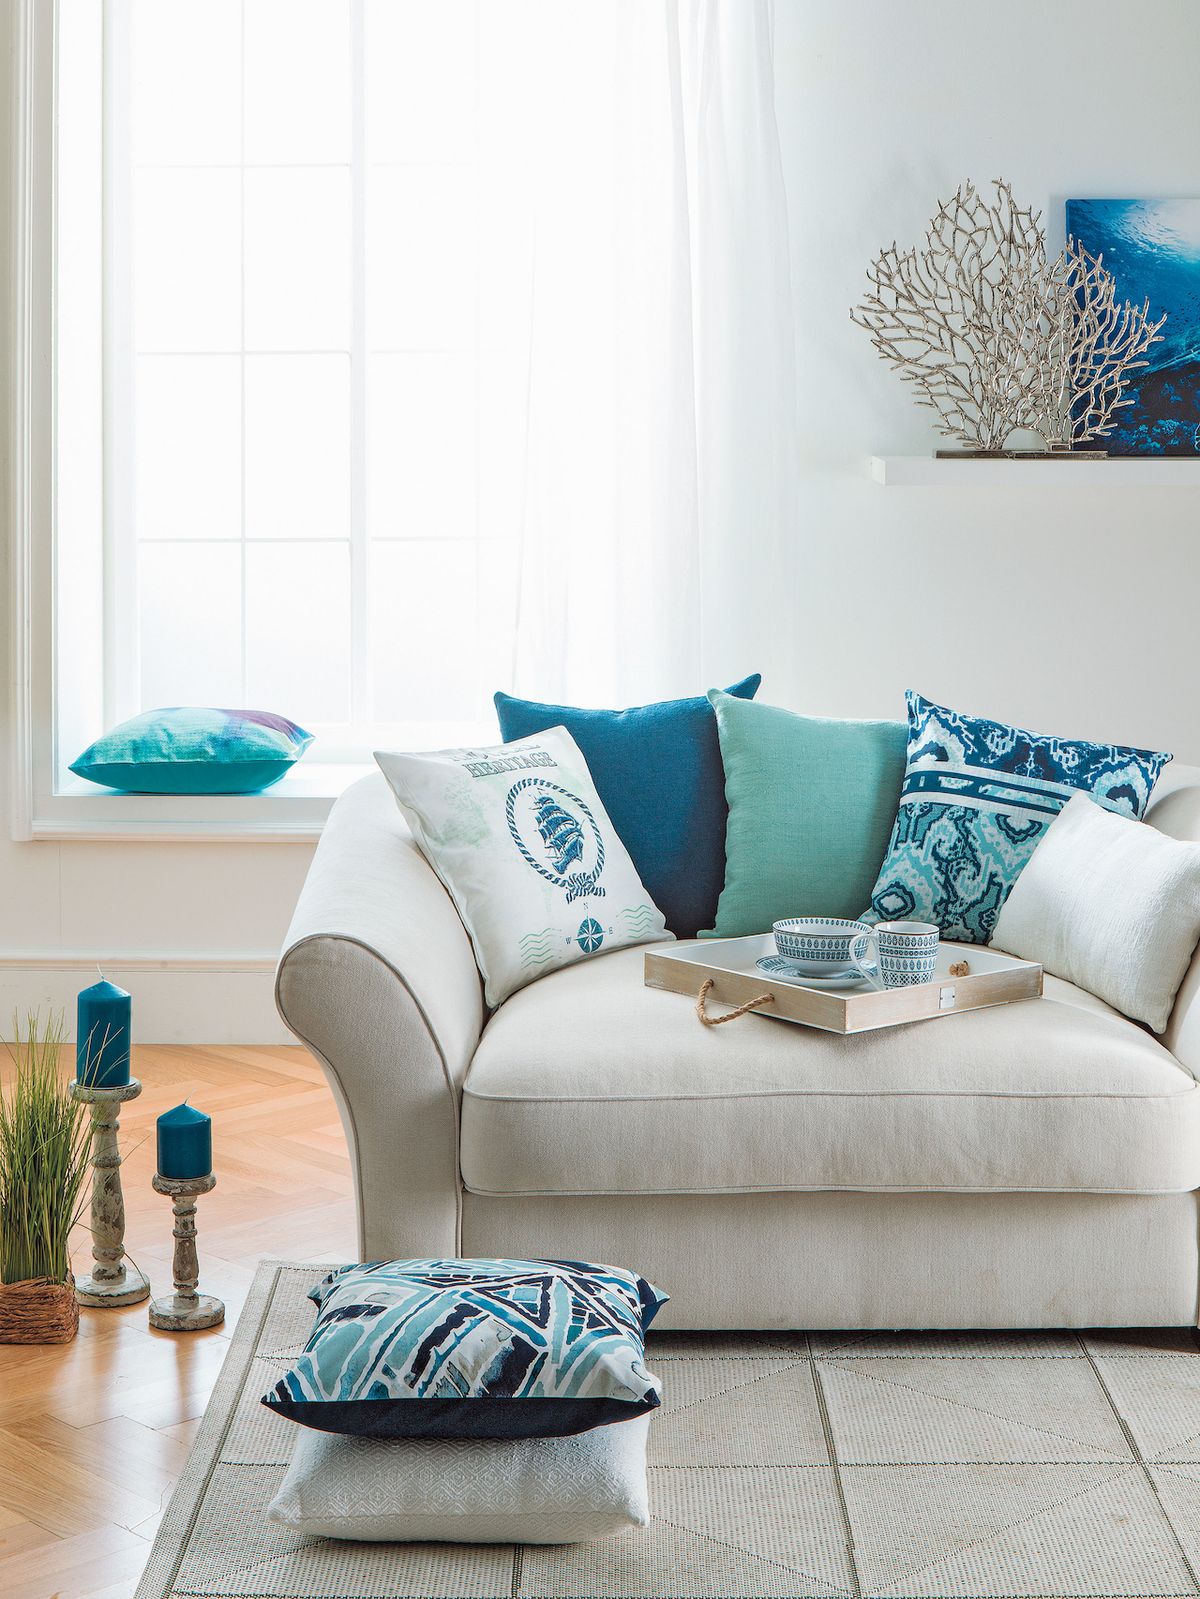 Oživte svůj obývací pokoj o dekorativní polštářek Indigo v odstínech modré barvy. Tato uklidňující barva vnese do vašeho interiéru klid a pohodu. Zajímavý motiv se navíc jen tak neokouká. Cena 120 Kč.